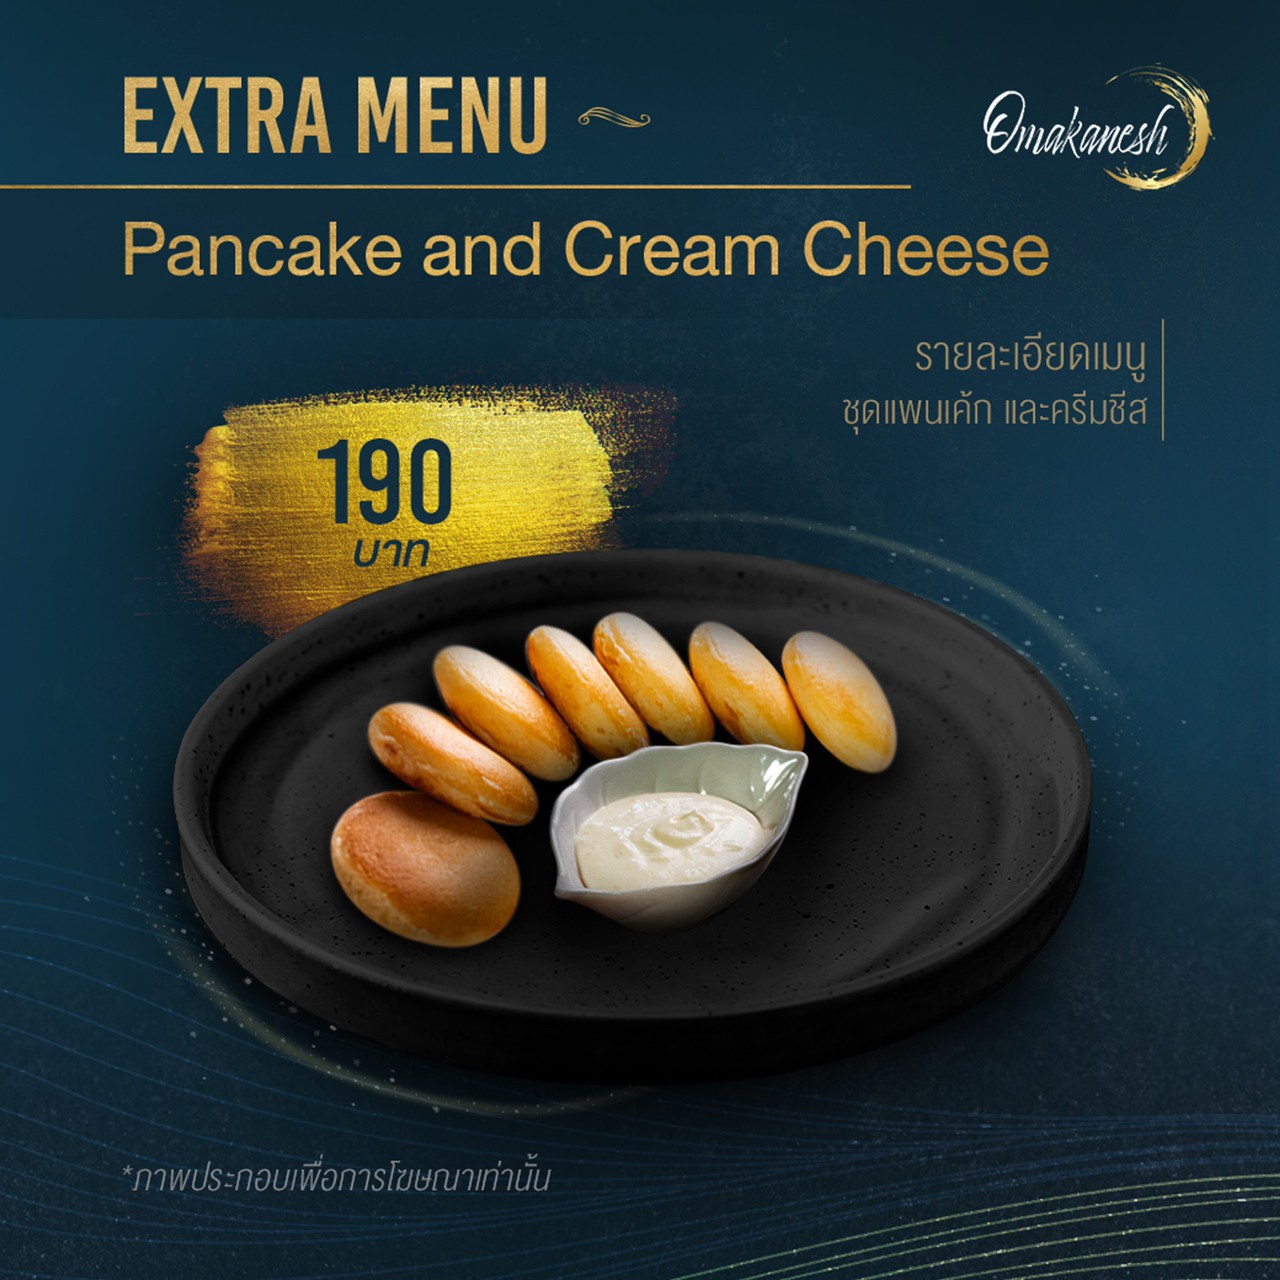 Pancake and Cream Cheese